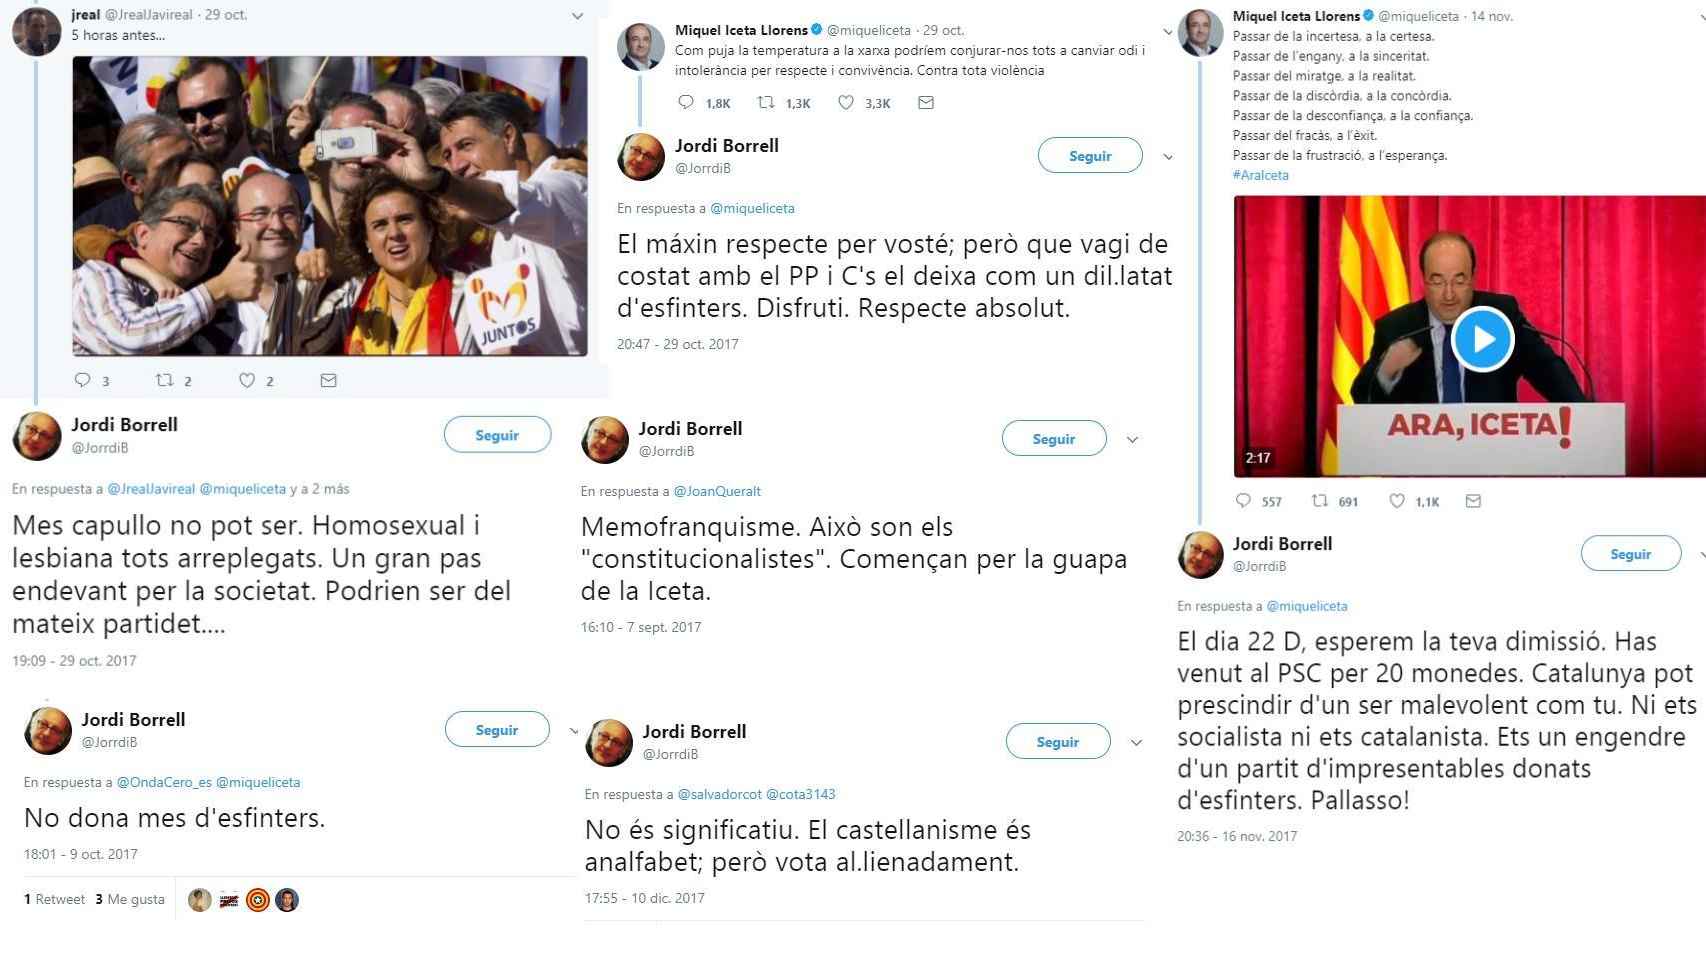 Los tuits vejatorios de Jordi Hernández Borrell.